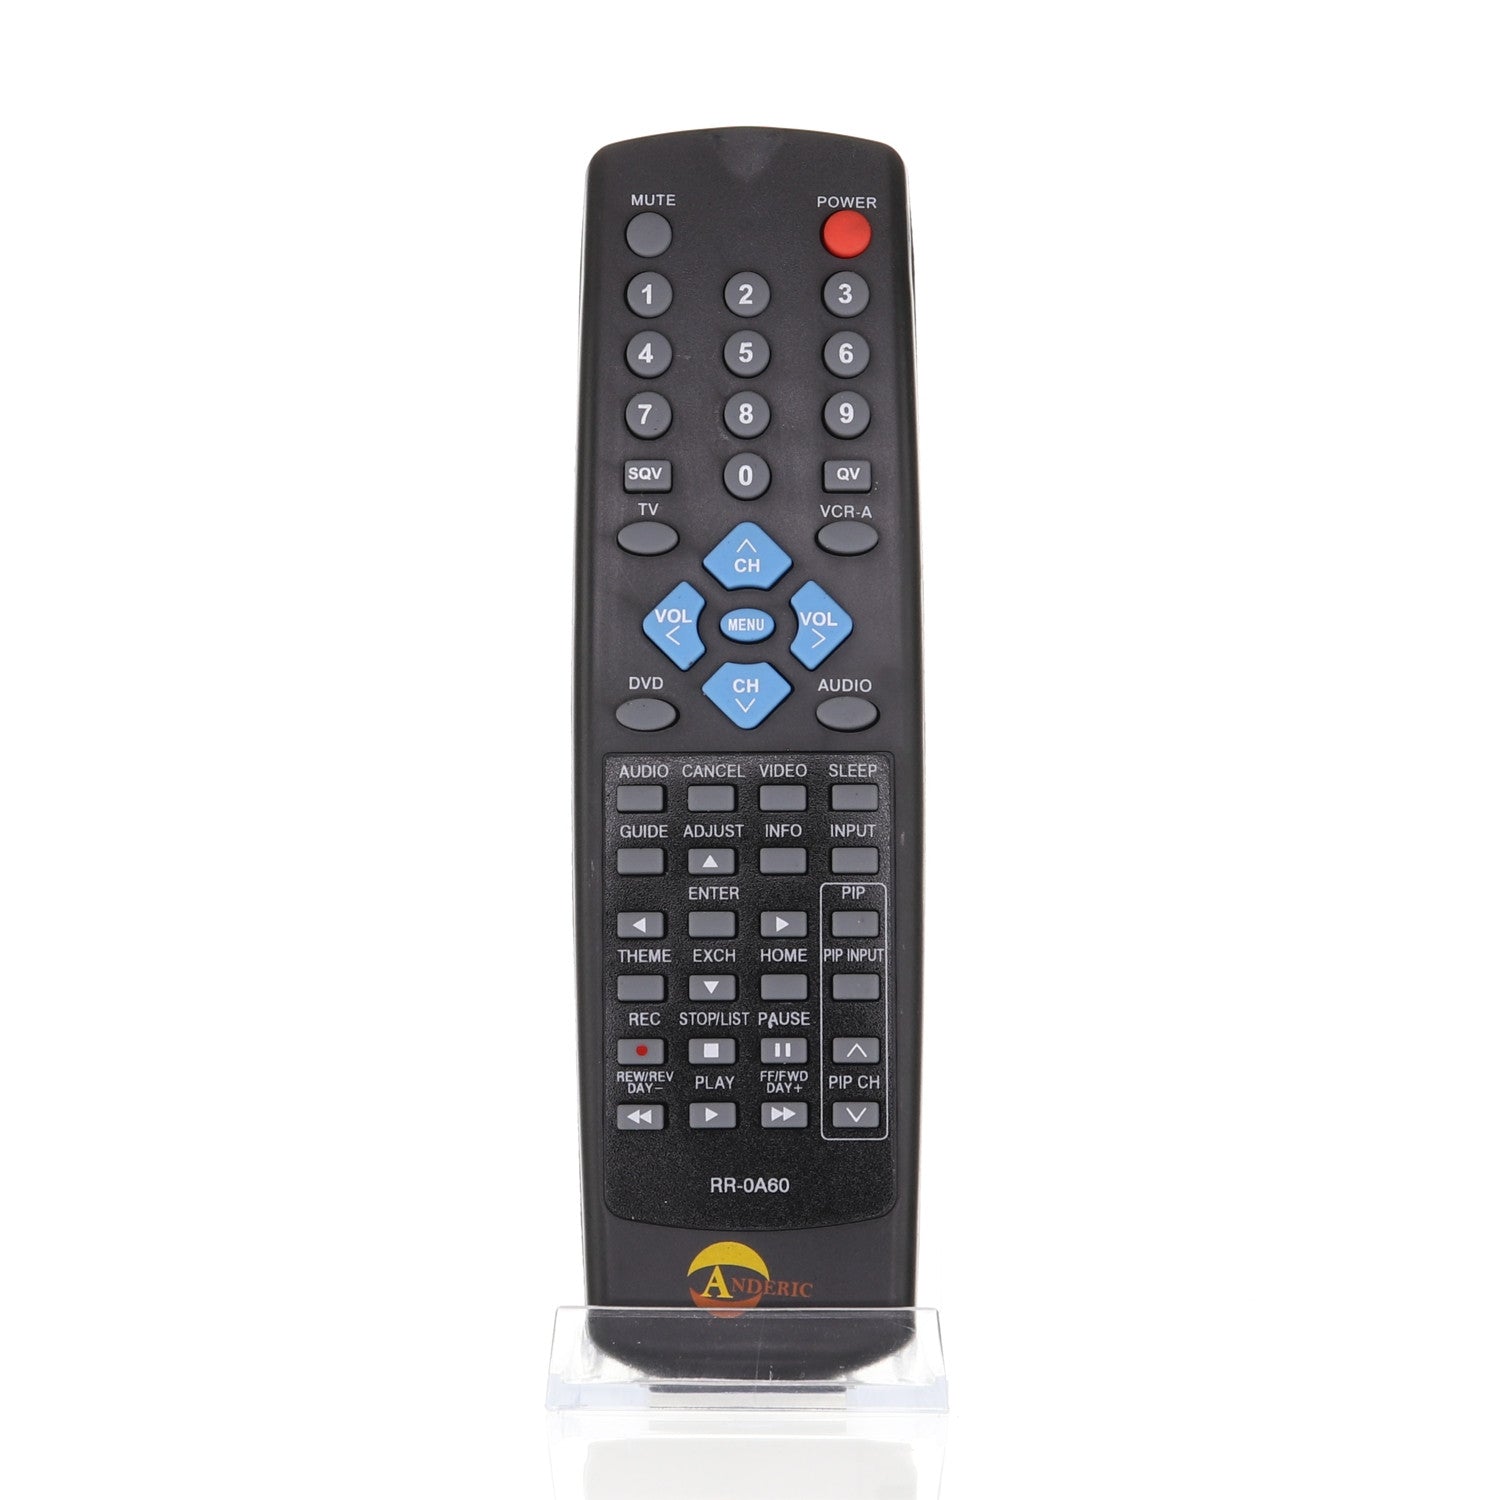 RR0A60 Remote Control for Mitsubishi® TVs